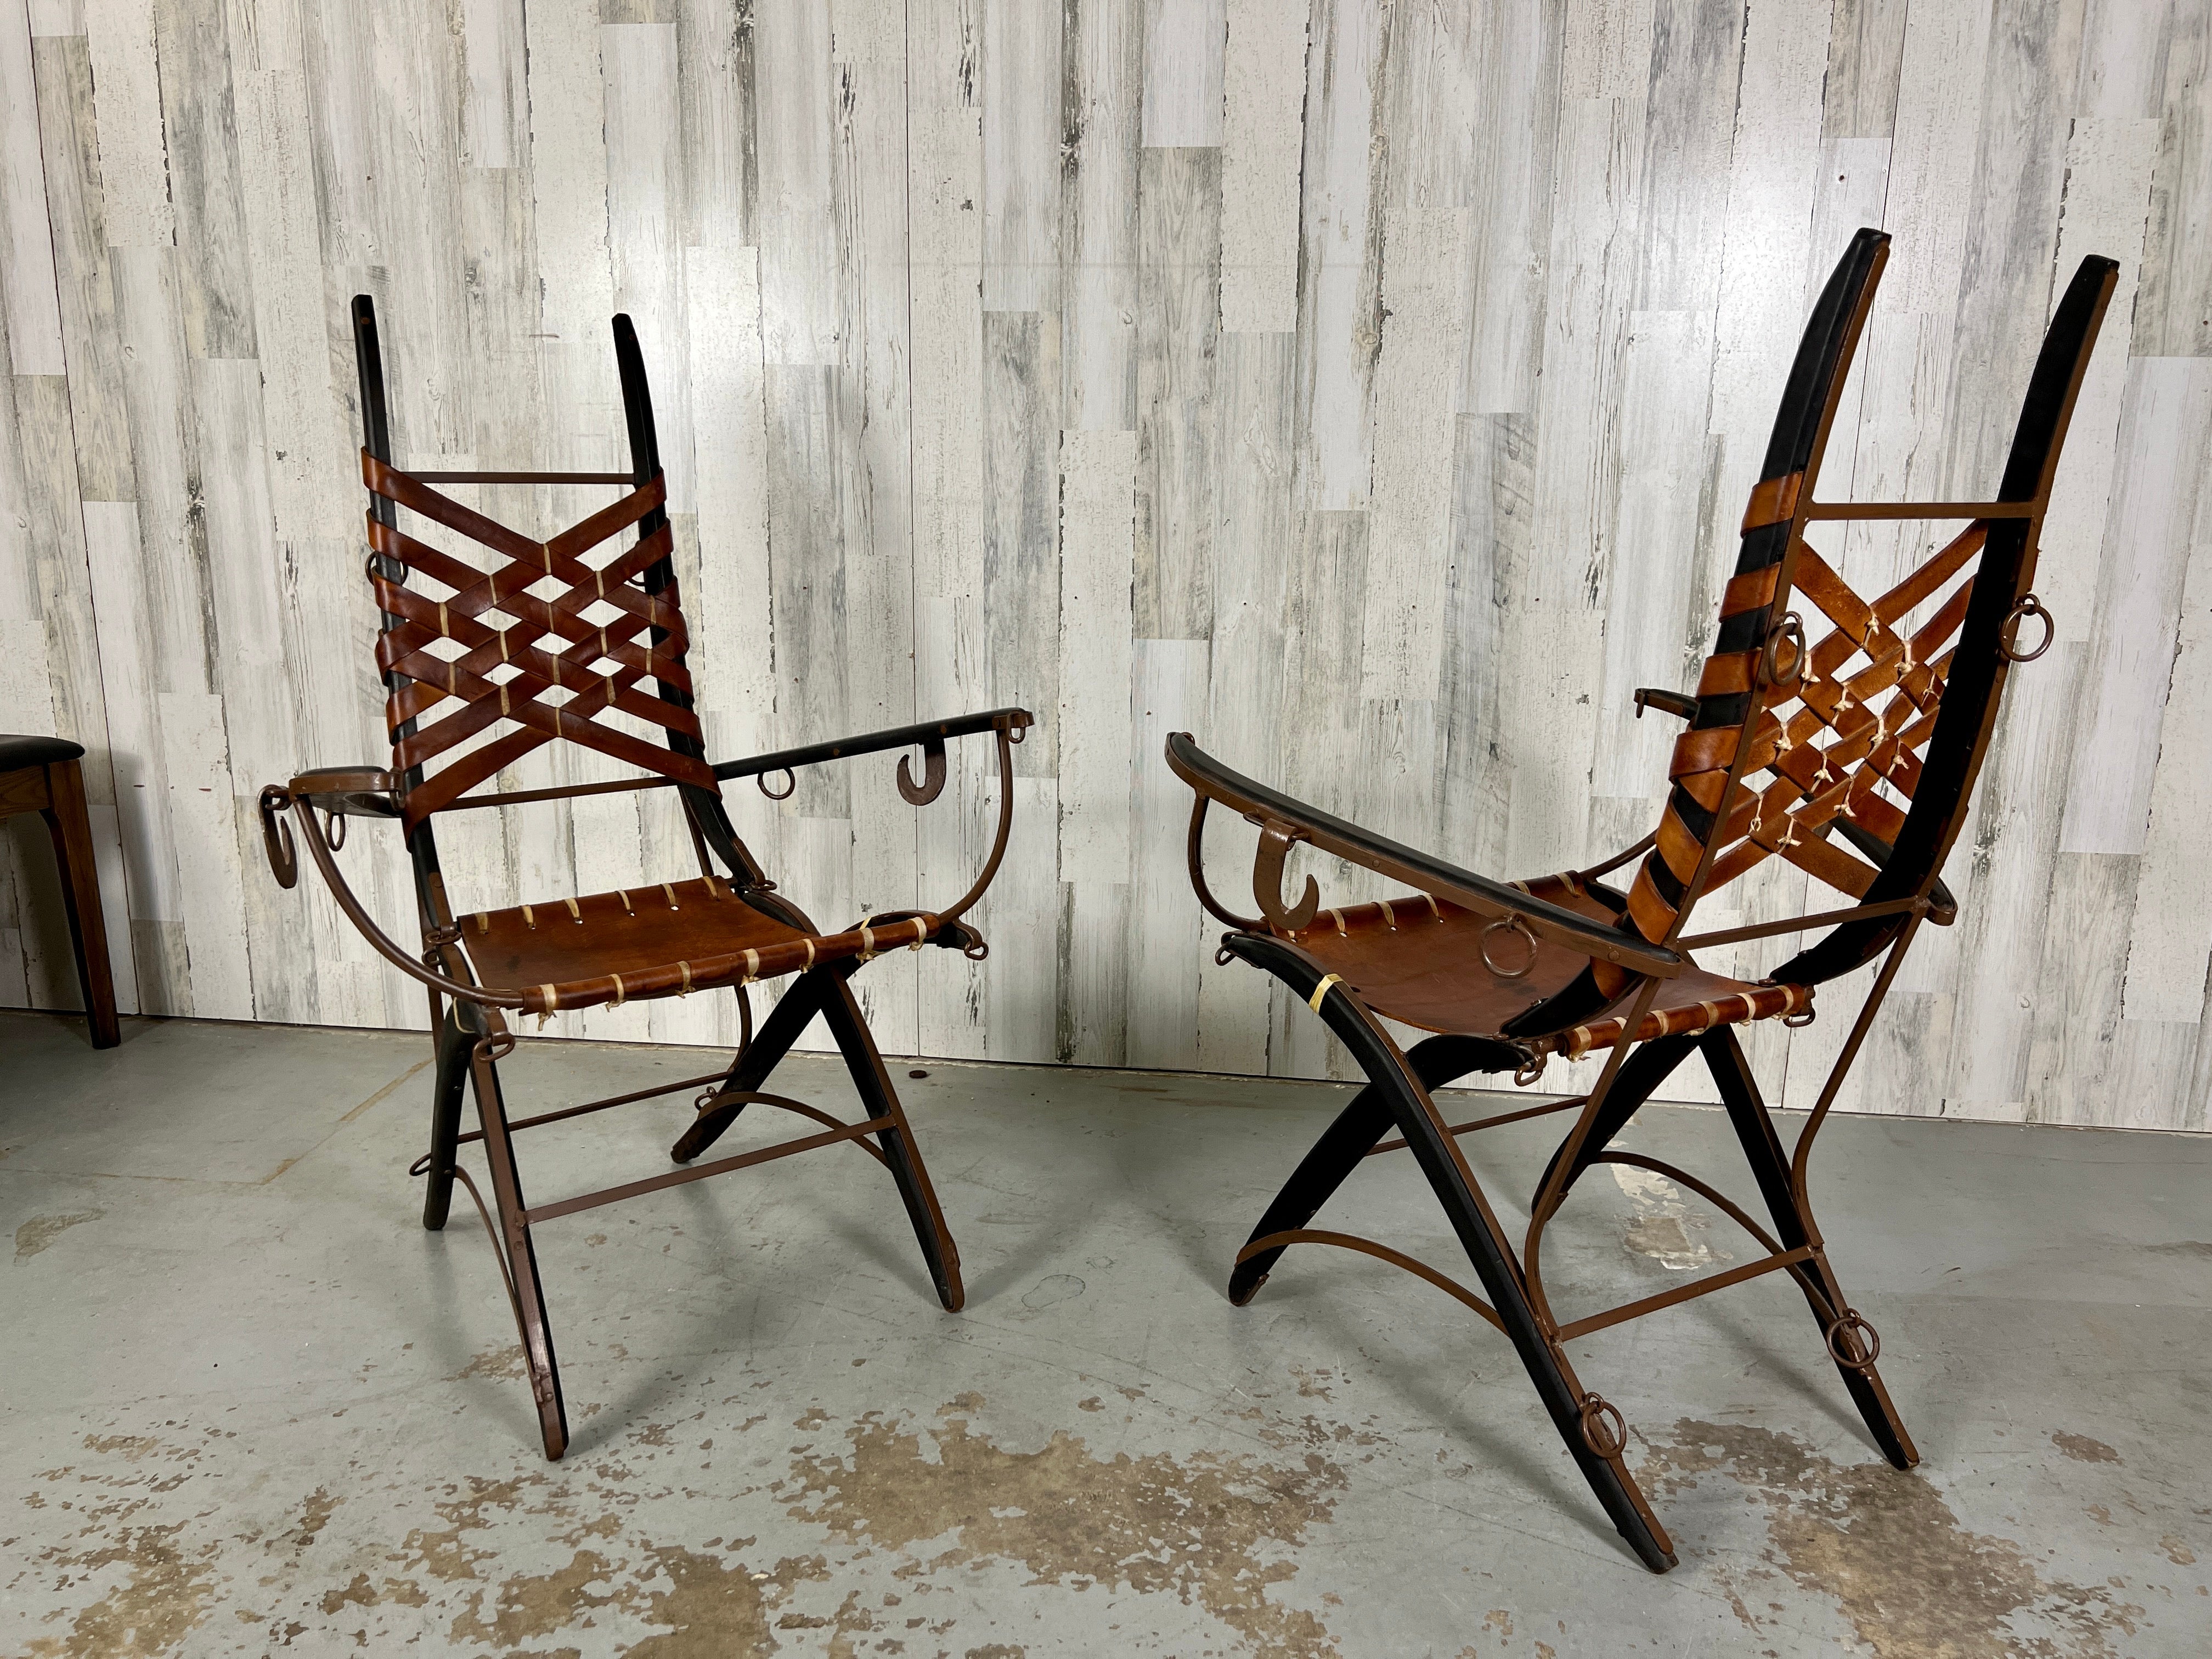 Ein Paar Beistellstühle des italienischen Designers Alberto Marconetti, Italien, 1960er Jahre. Design/One ist aus Eisen, Eiche und Leder gefertigt. Aus Eiche und Eisen geschnitzt, mit Eisenhaken und -ringen als Akzente. 
Die Lederrückseite in